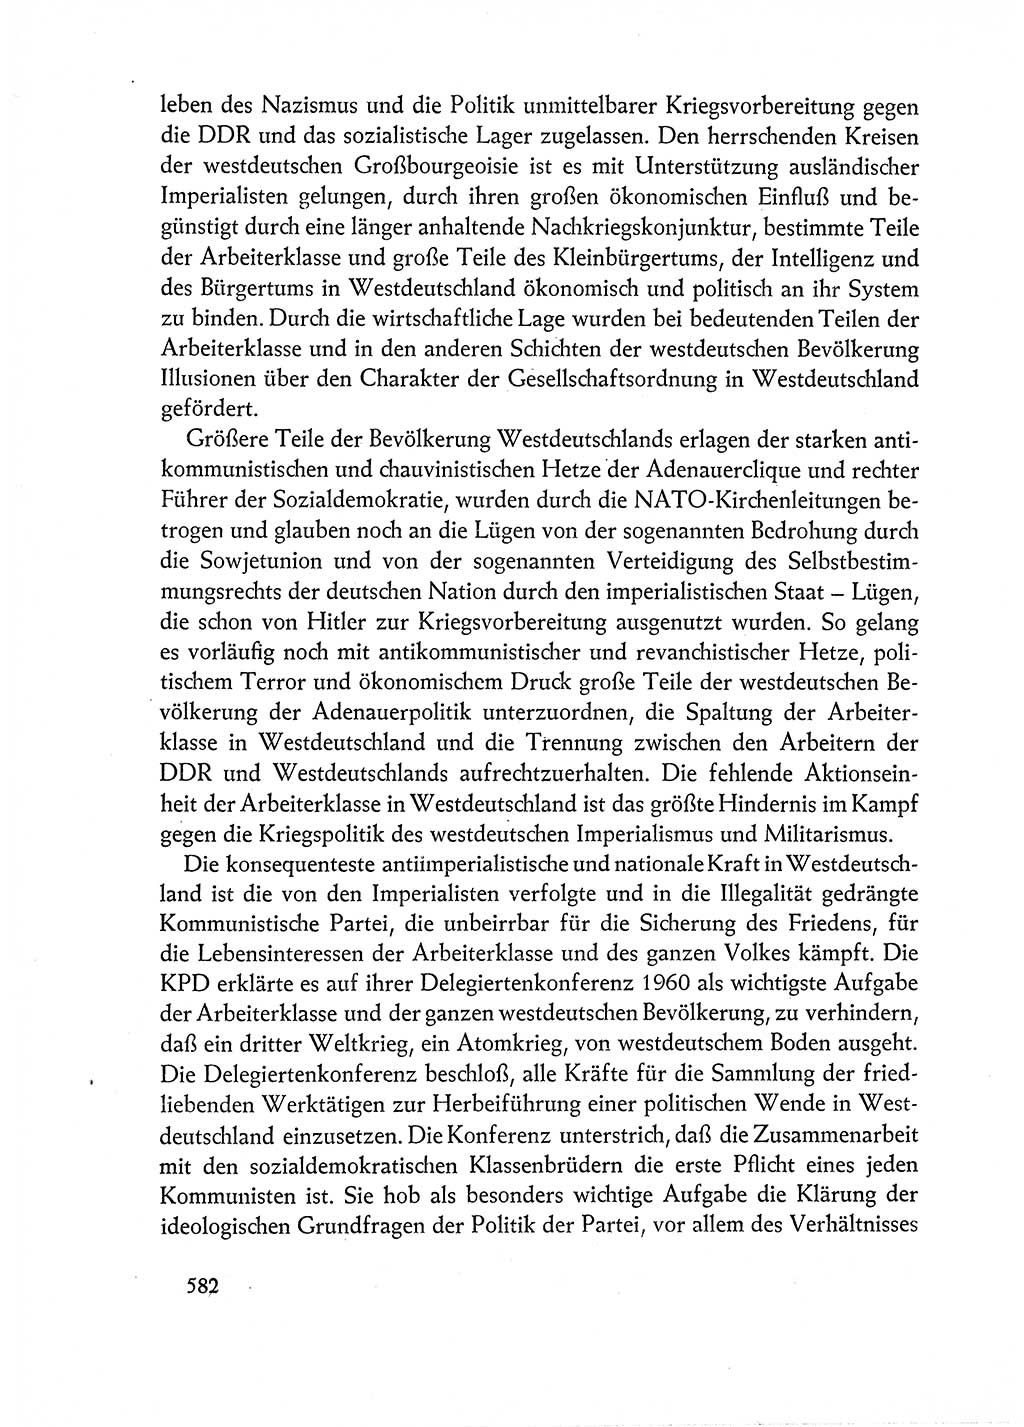 Dokumente der Sozialistischen Einheitspartei Deutschlands (SED) [Deutsche Demokratische Republik (DDR)] 1962-1963, Seite 582 (Dok. SED DDR 1962-1963, S. 582)